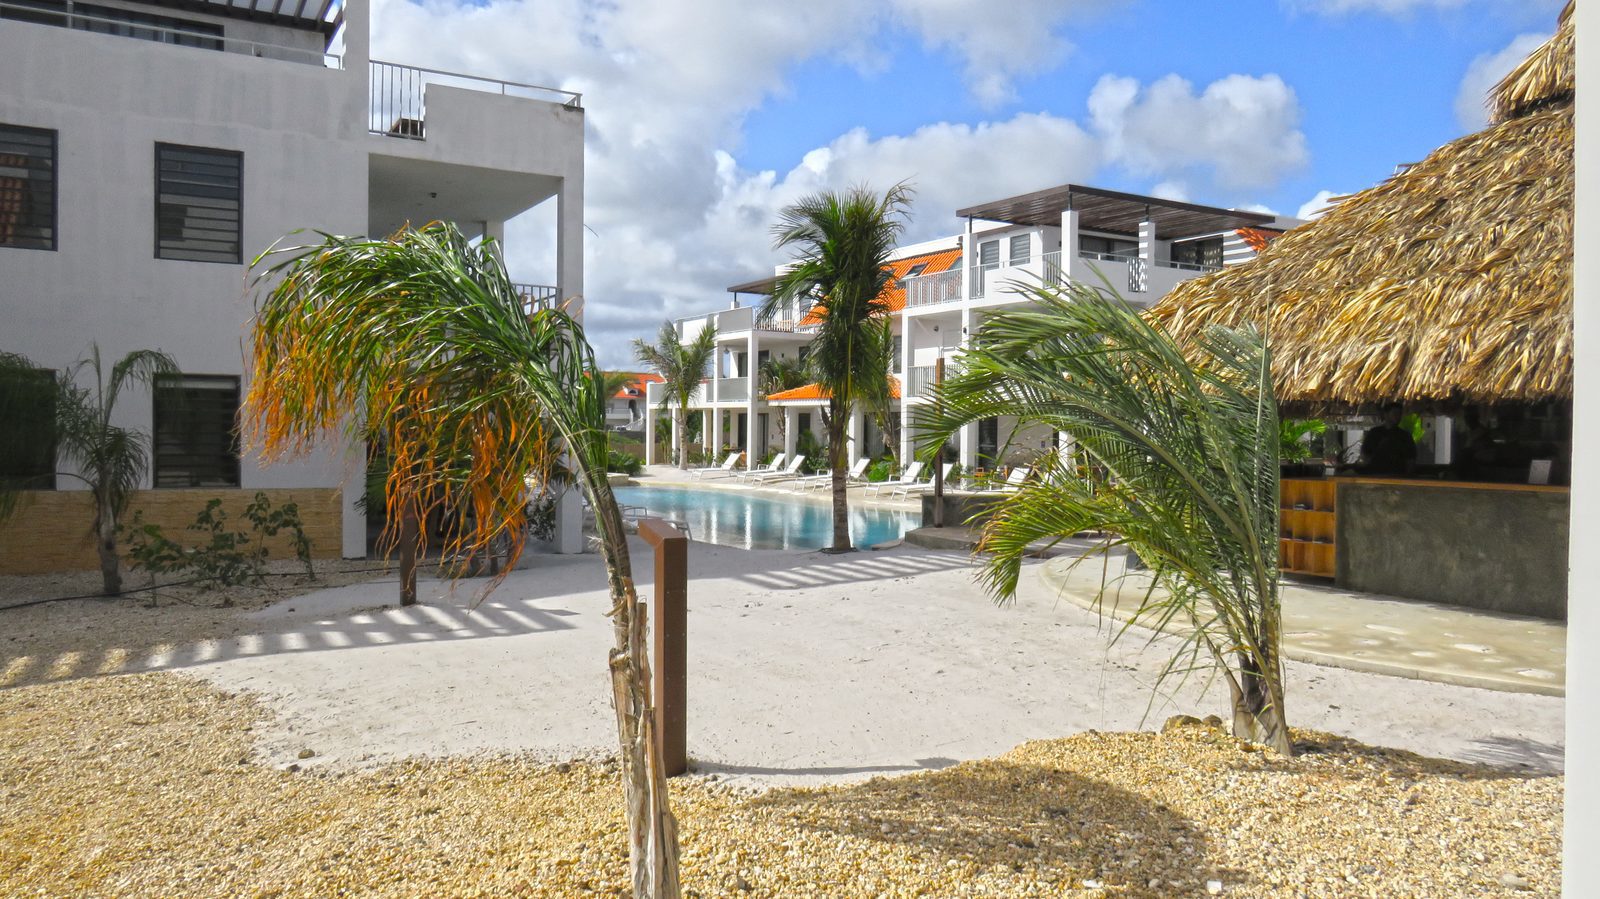 Vous recherchez un hébergement à Bonaire ? Jetez un coup d'œil aux logements disponibles dans notre complexe. Des appartements luxueux, adaptés aux familles avec enfants et équipés d'un grand confort pour votre plus grand plaisir !